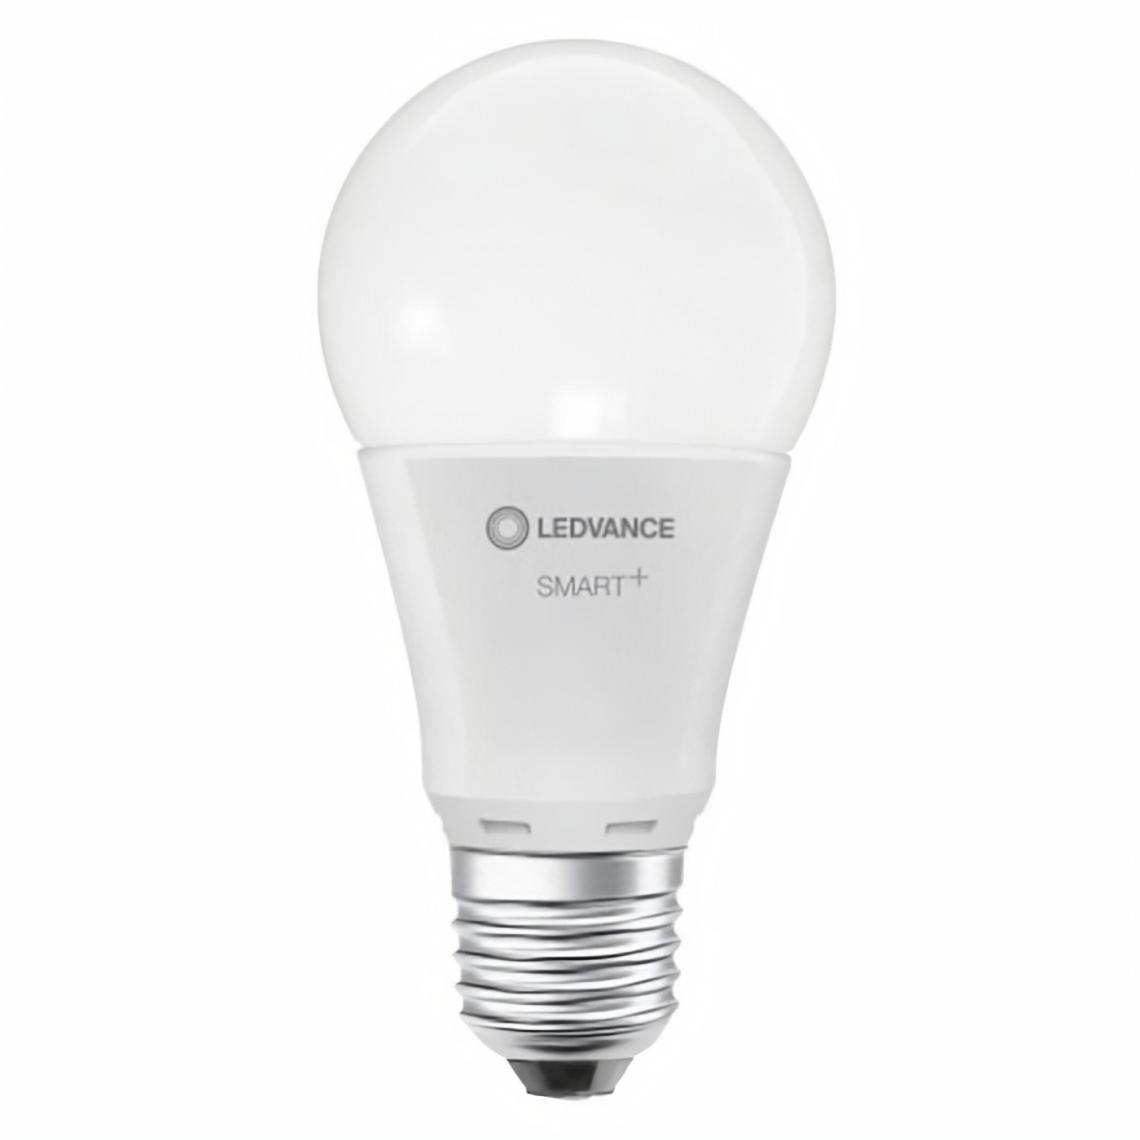 Ledvance - LEDVANCE BTE1 Ampoule Smart+ WIFI STANDARD DEPOLIE 100W E27 VARIATION DE BLANCS - Lampe connectée